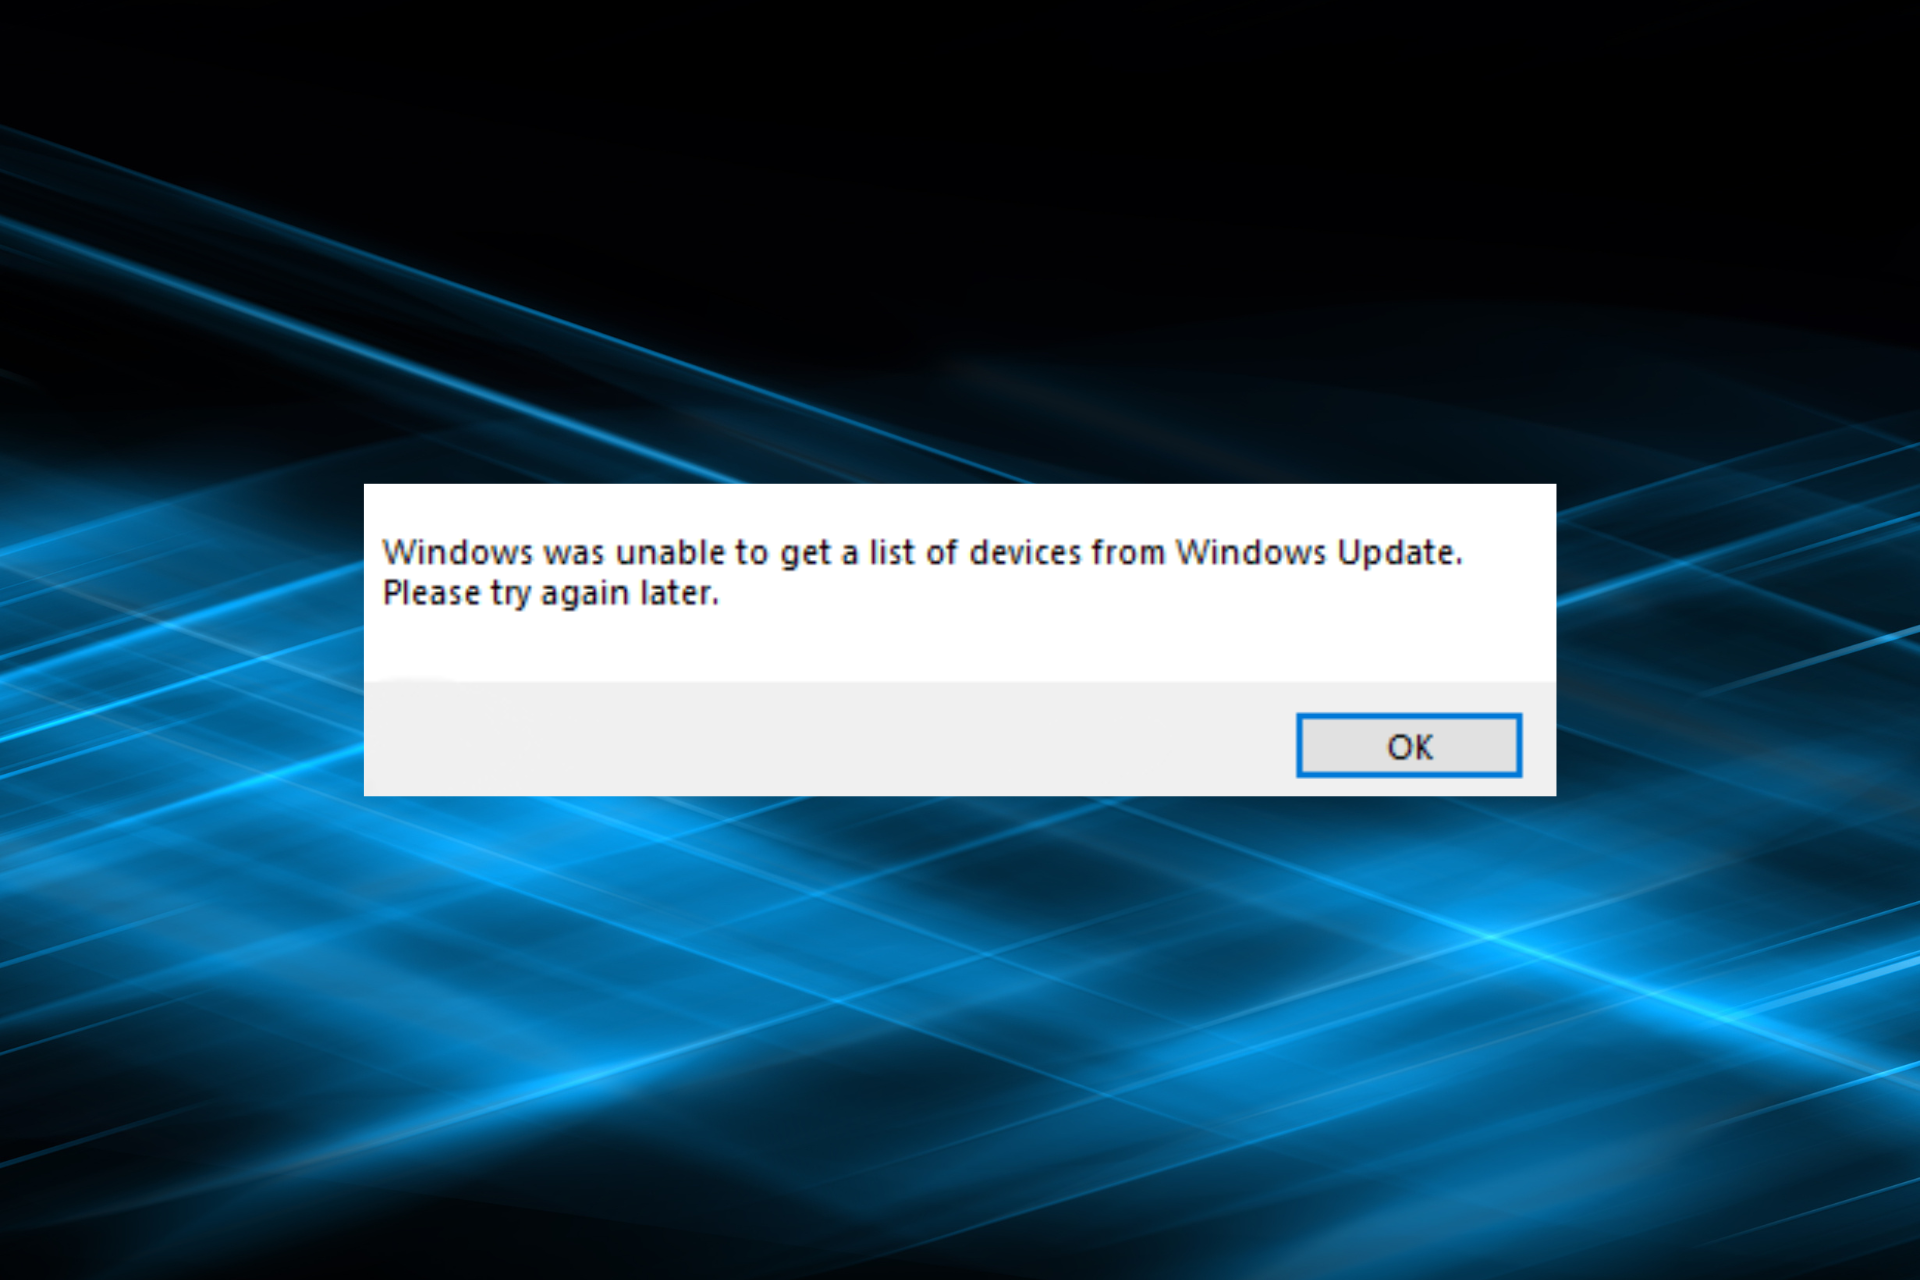 reparar Windows no pudo obtener una lista de dispositivos de un error de actualización de Windows al instalar la impresora